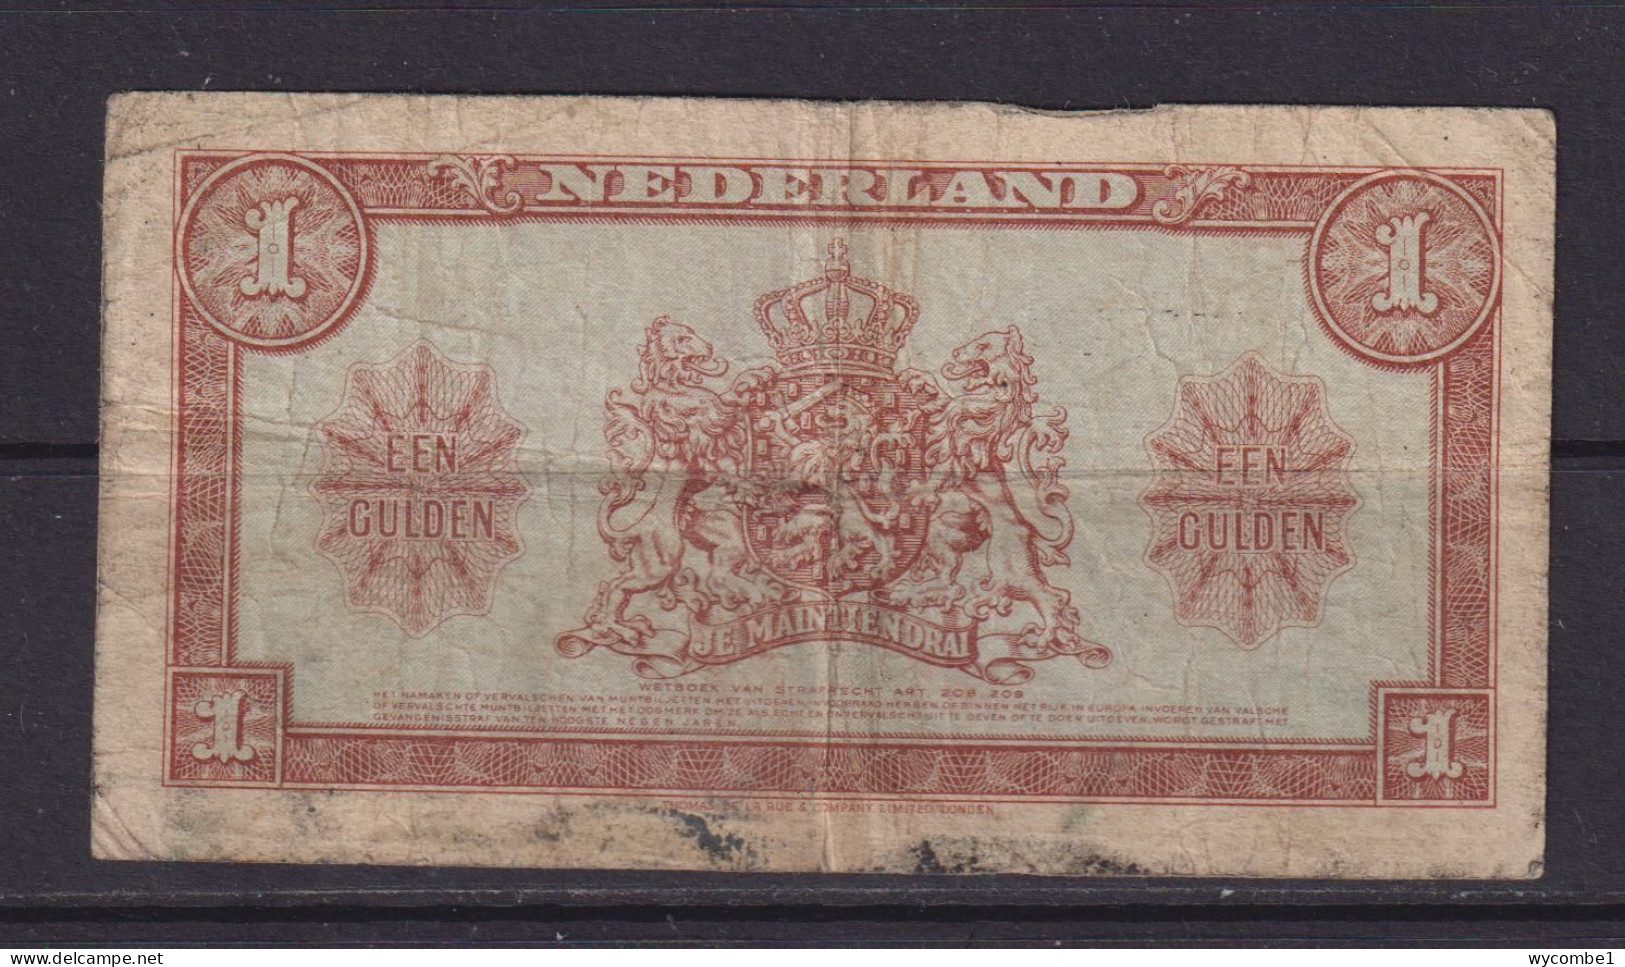 NETHERLANDS - 1945 1 Gulden Circulated Banknote - 1  Florín Holandés (gulden)